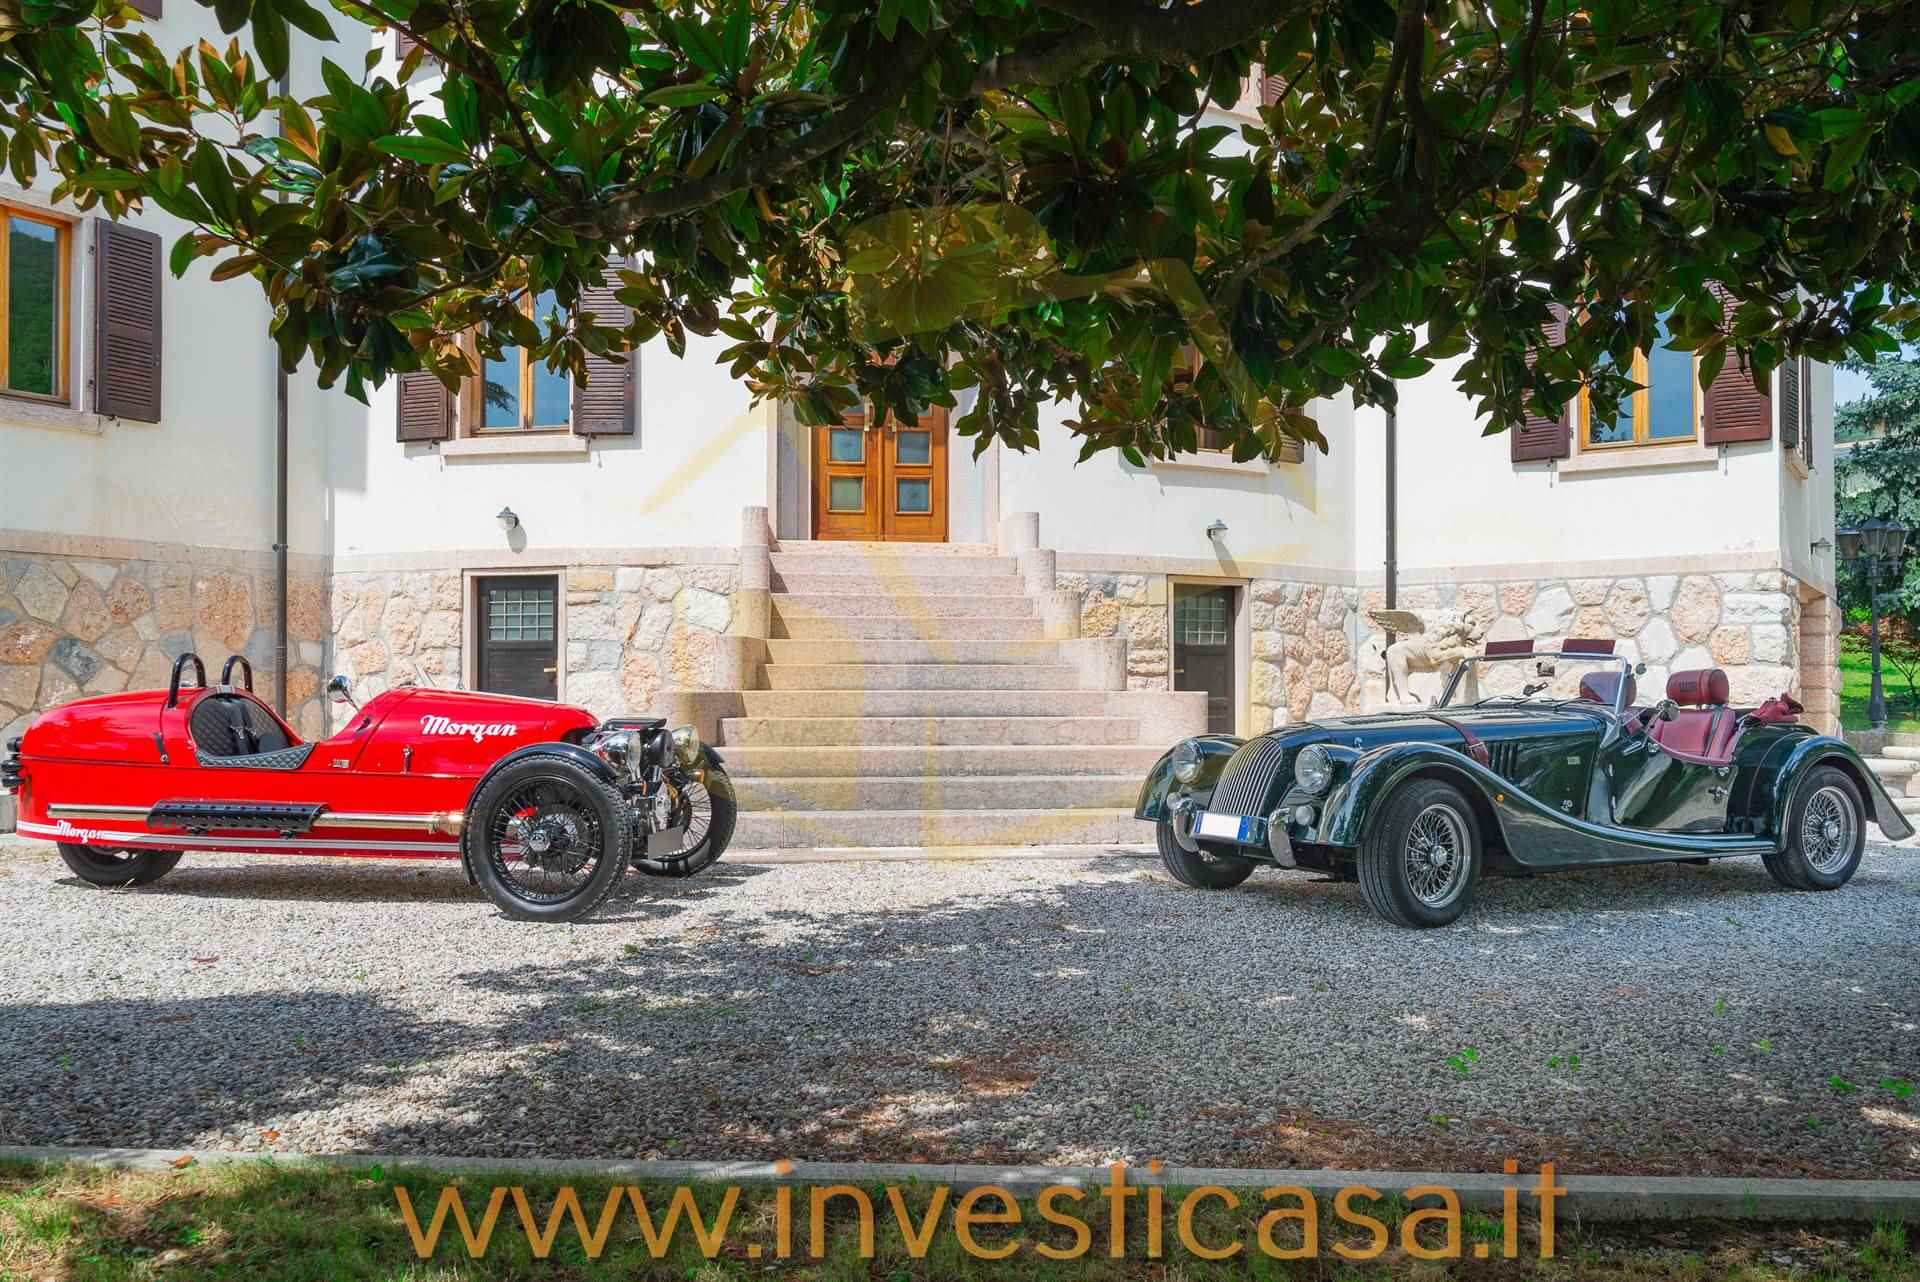 Villa in vendita a Caprino Veronese, 8 locali, prezzo € 950.000 | CambioCasa.it